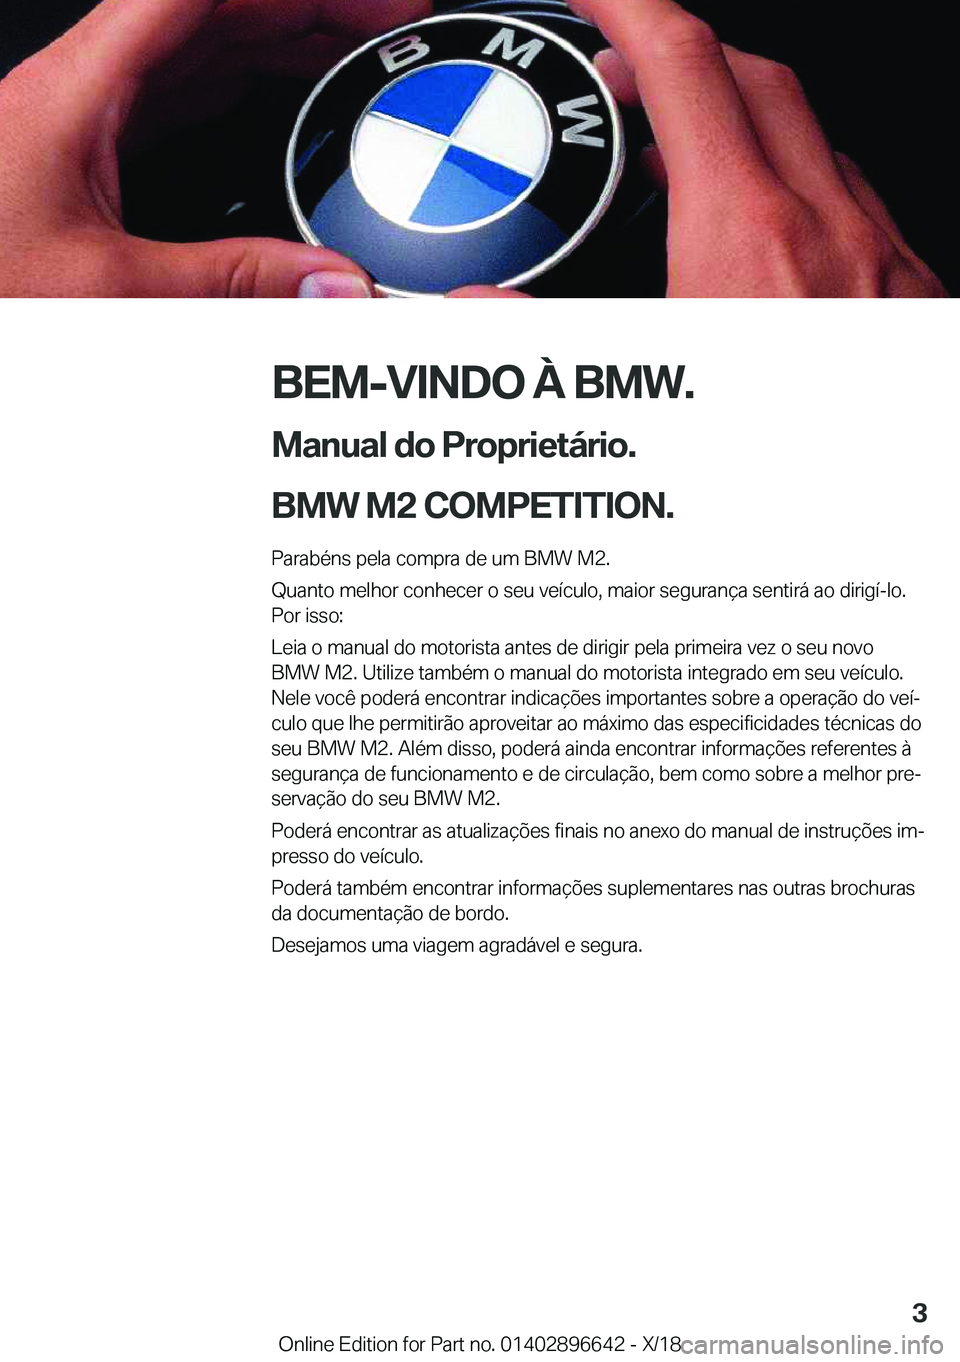 BMW M2 2019  Manual do condutor (in Portuguese) �B�E�M�-�V�I�N�D�O��À��B�M�W�.
�M�a�n�u�a�l��d�o��P�r�o�p�r�i�e�t�á�r�i�o�.
�B�M�W��M�2��C�O�M�P�E�T�I�T�I�O�N�.� �P�a�r�a�b�é�n�s��p�e�l�a��c�o�m�p�r�a��d�e��u�m��B�M�W��M�2�.�Q�u�a�n